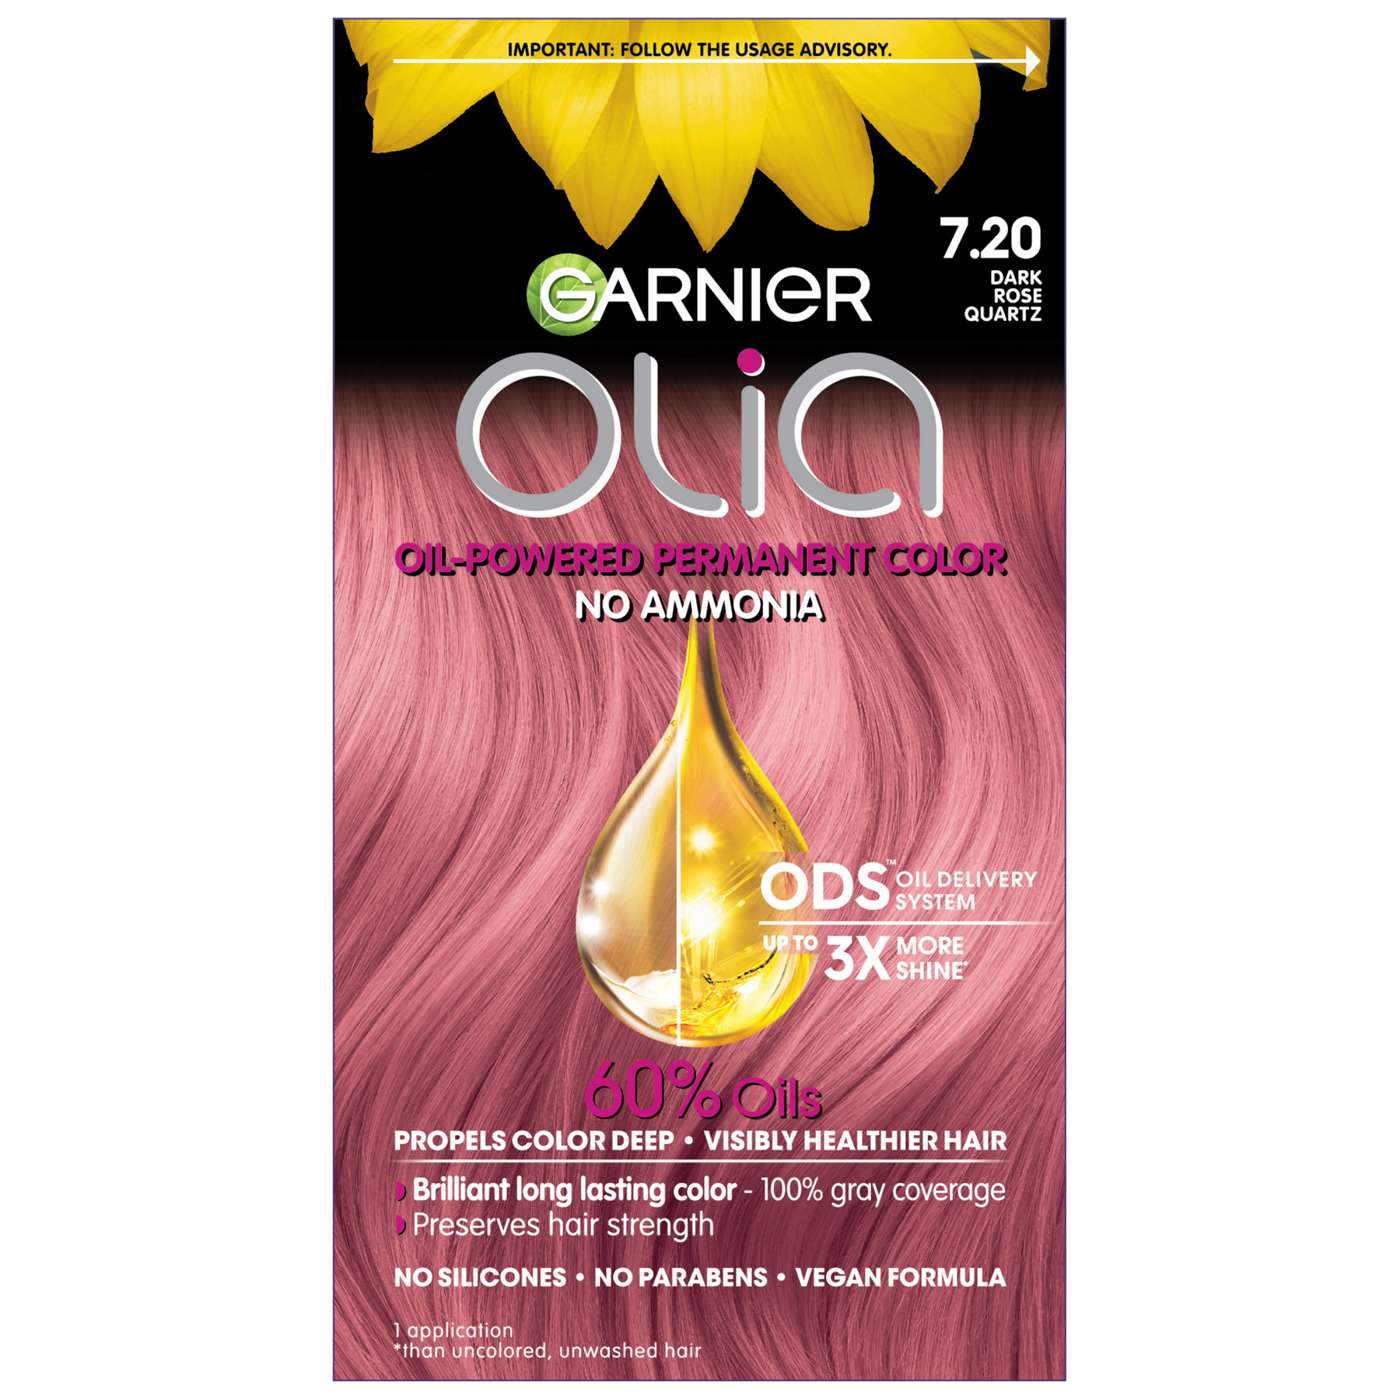 Garnier Olia Oil Powered Ammonia Free Permanent Hair Color 7.20 Dark Rose Quartz; image 1 of 16